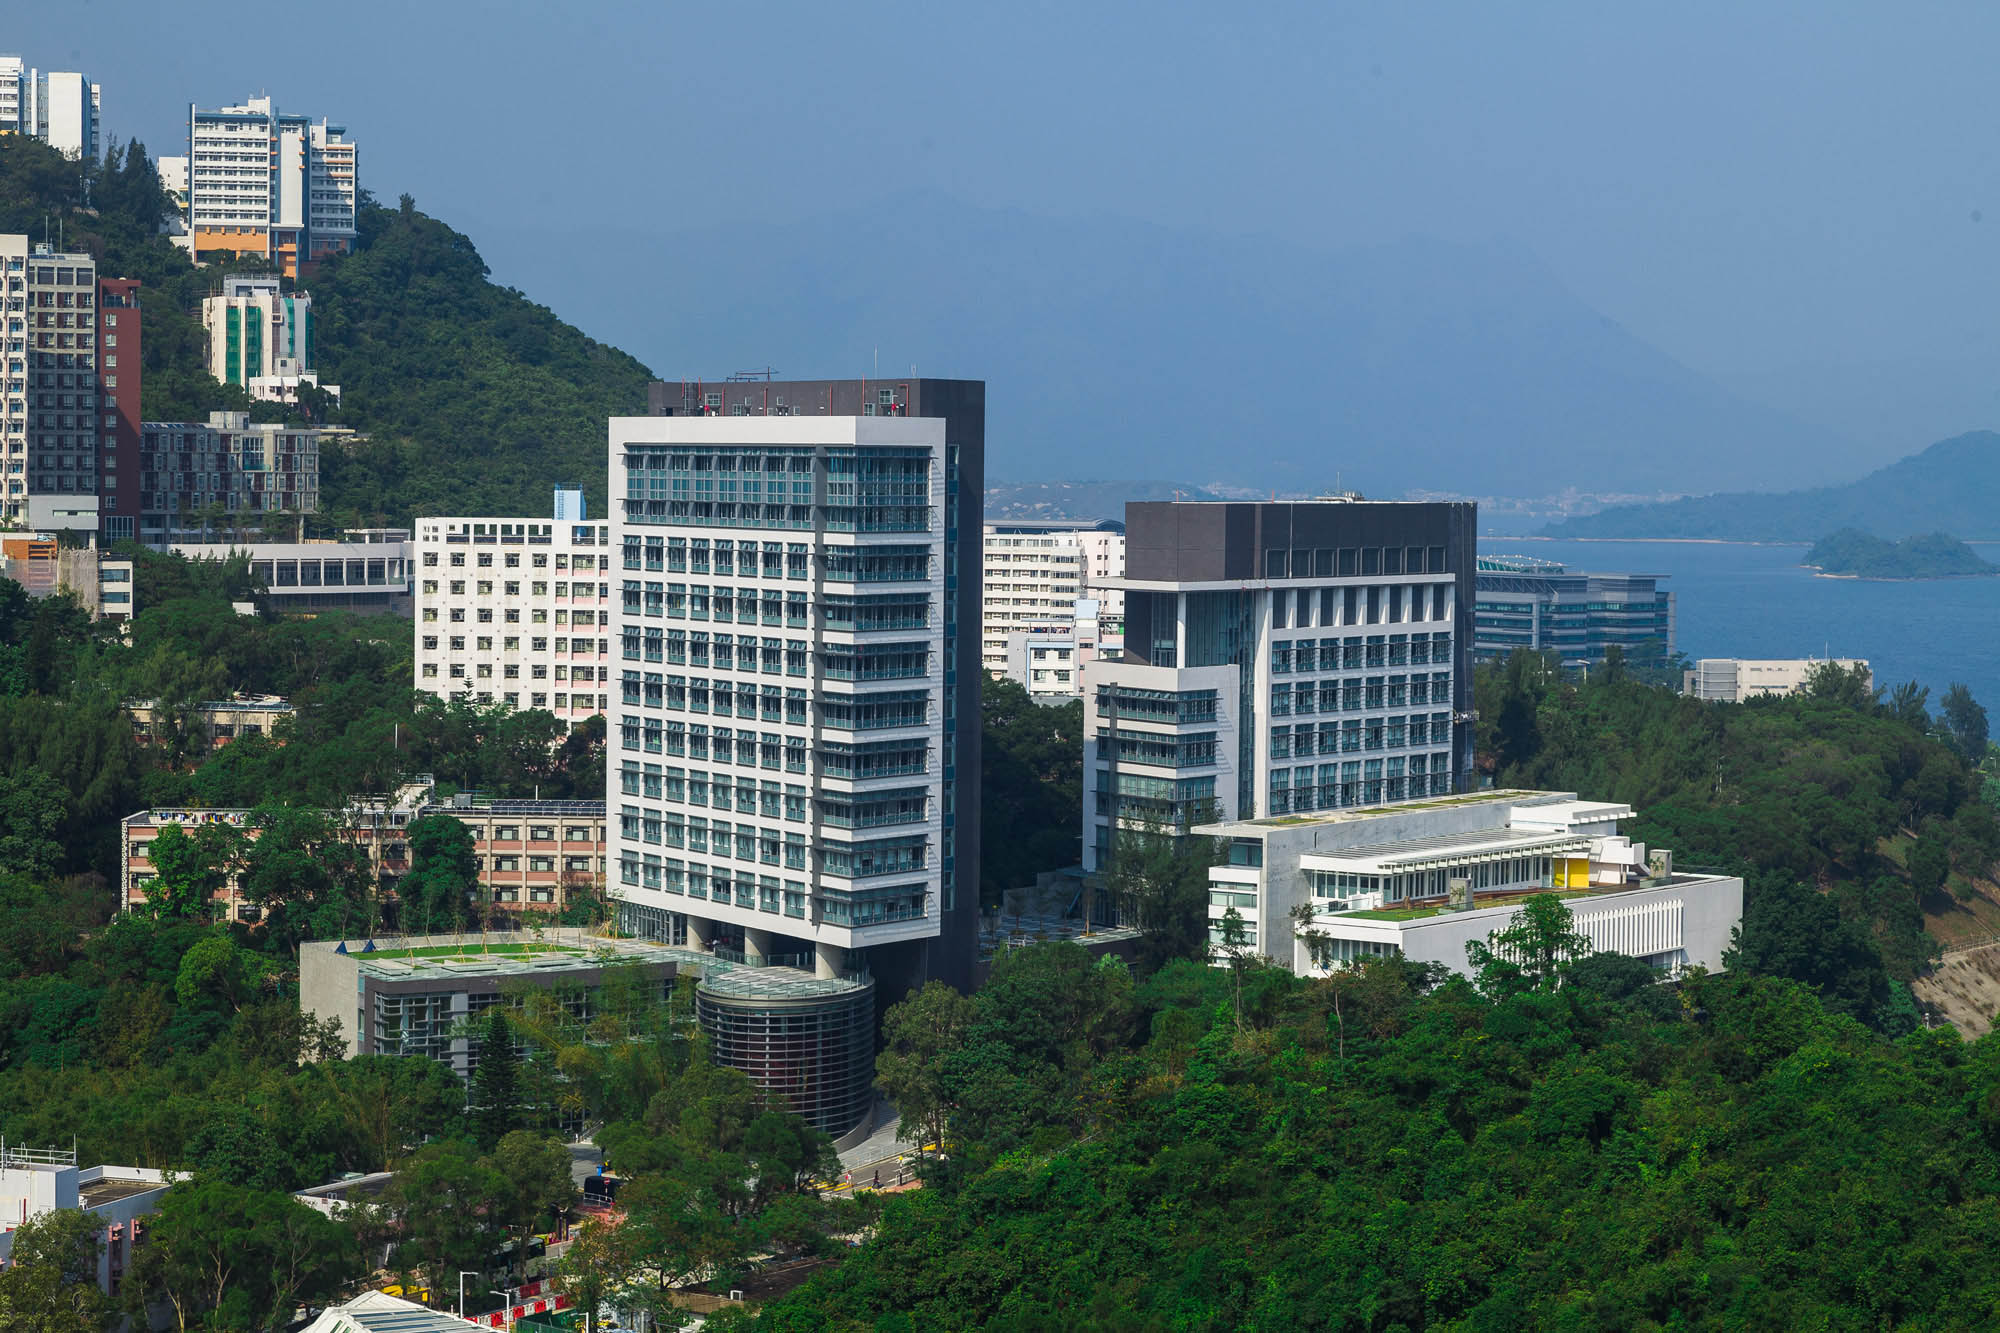 香港中文大学 康本国际学术园 及 伍何曼原楼